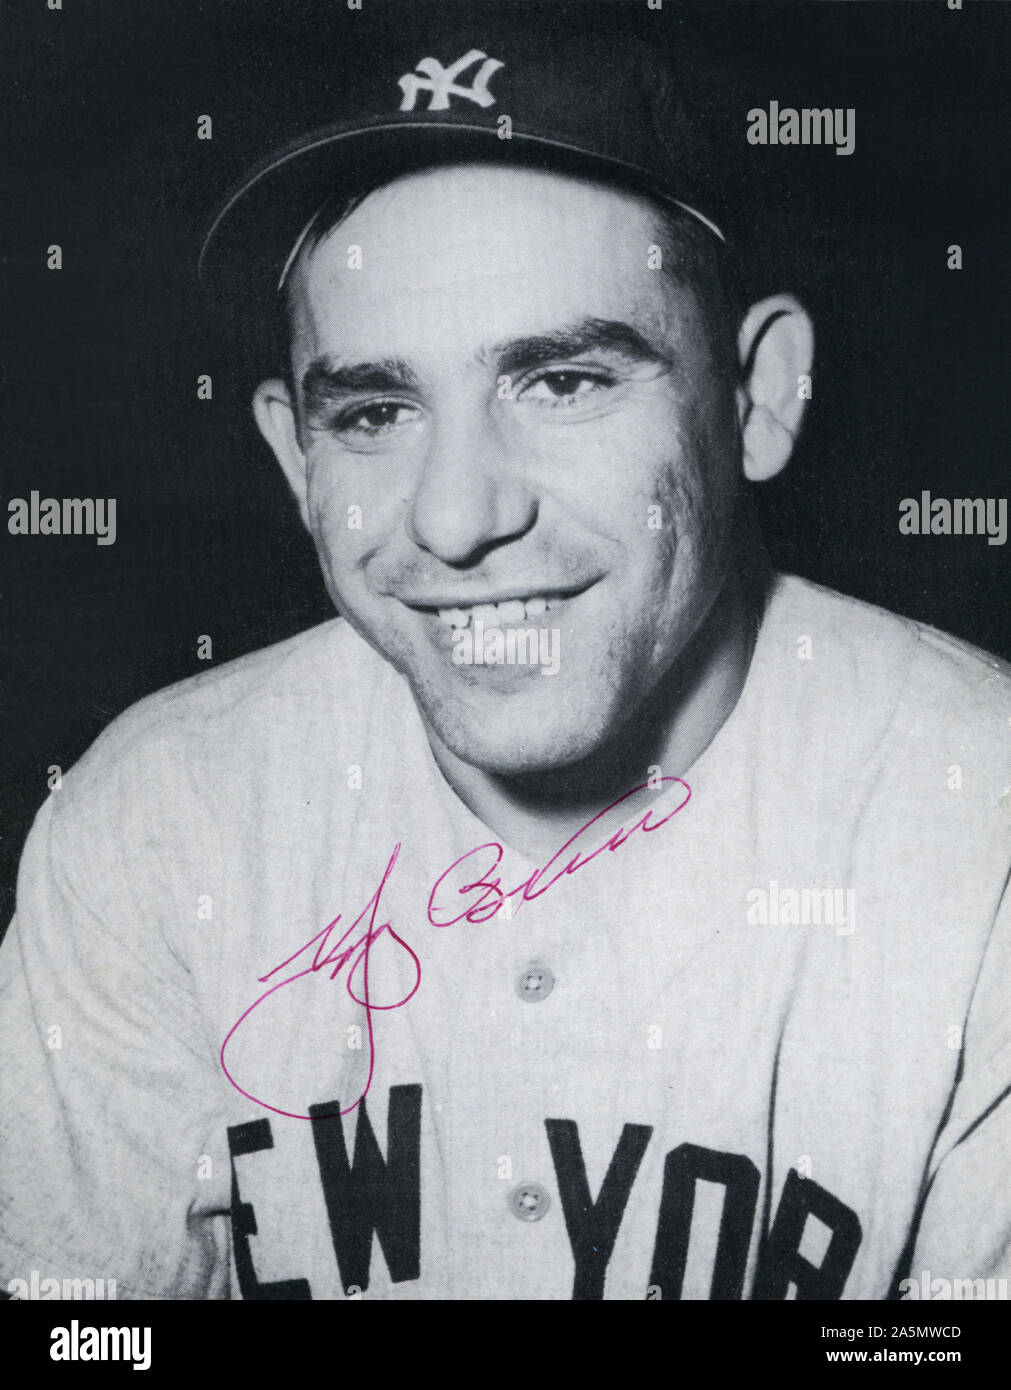 Autographiée vintage photo en noir et blanc de New Yankee Hall of Fame joueur de baseball Yogi Berra. Banque D'Images